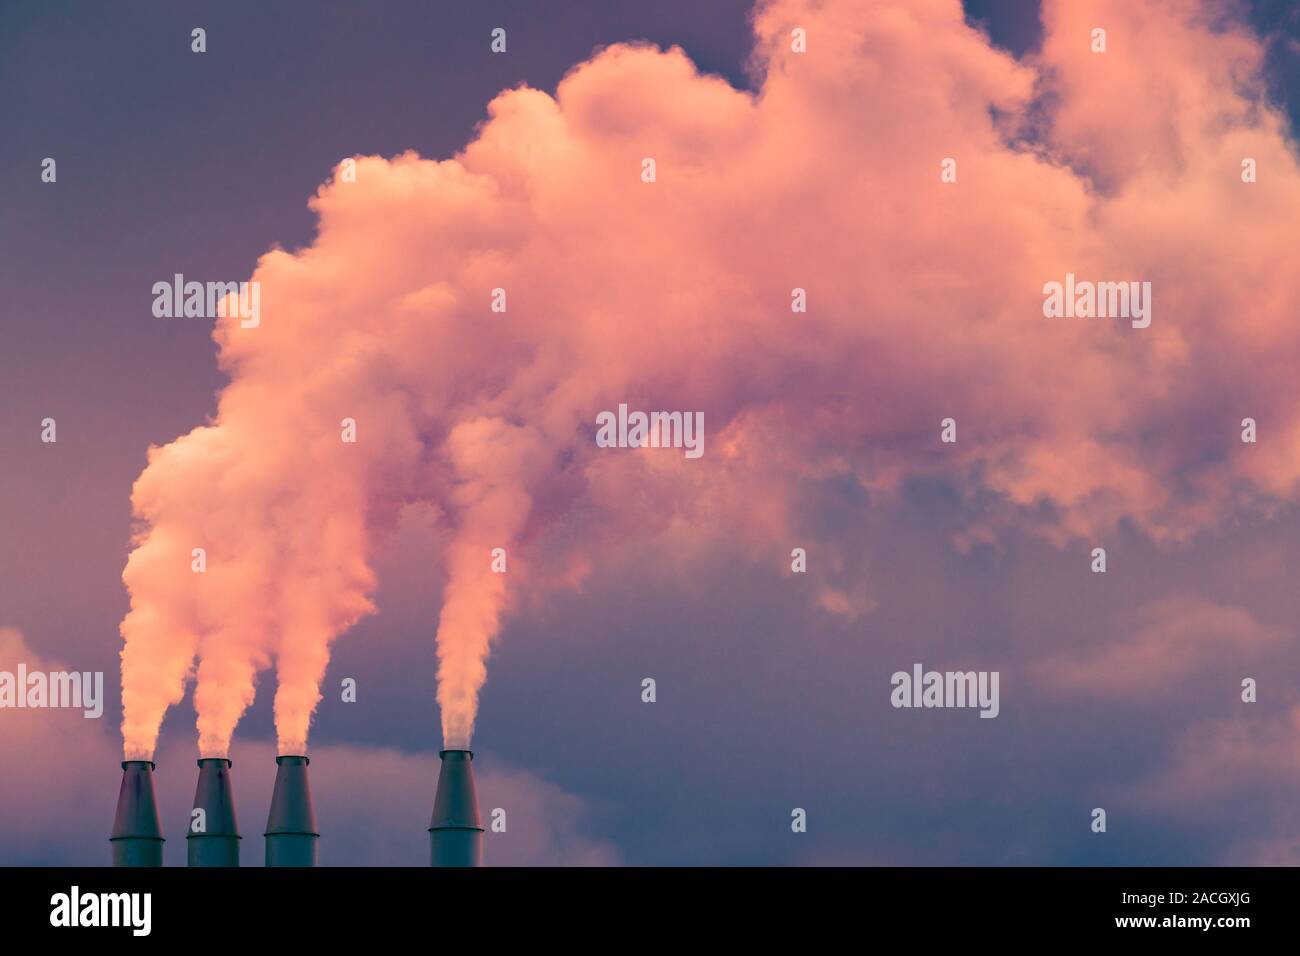 Fumo e vapore in salita l'aria dall'impianto di alimentazione di pile; nuvole scure sullo sfondo; concetto per inquinamento ambientale e il cambiamento climatico Foto Stock